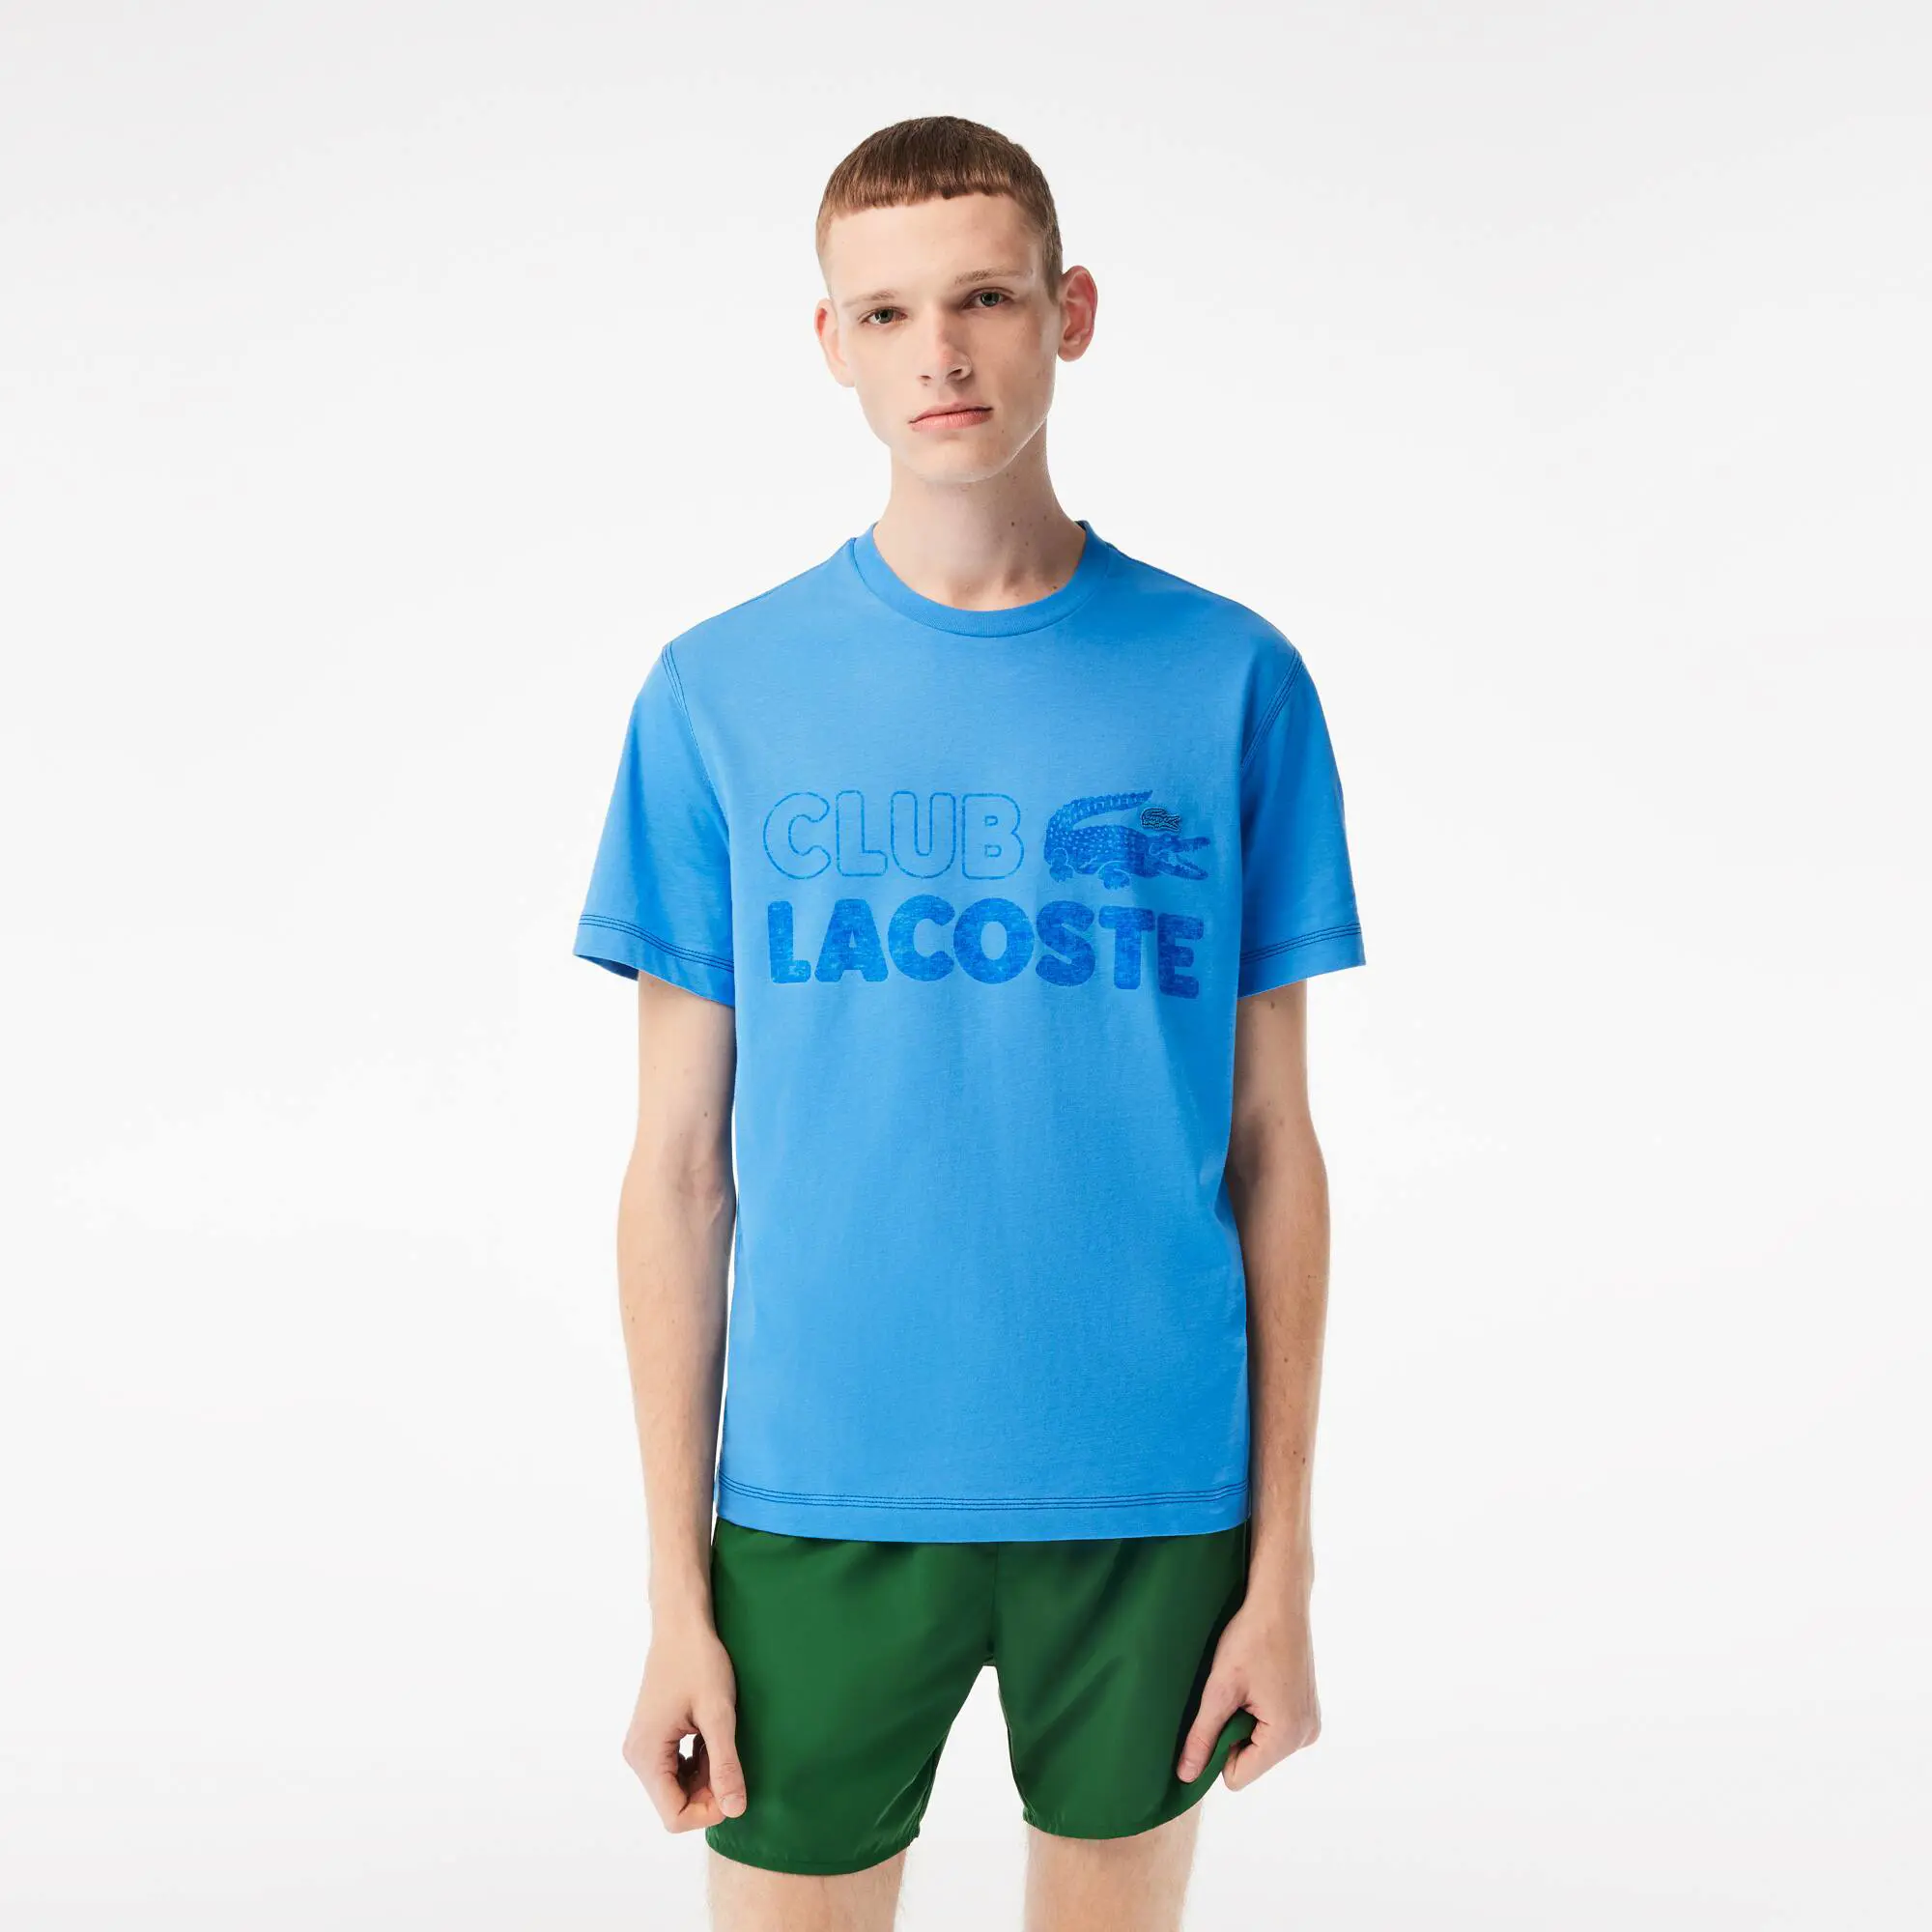 Lacoste Men’s Vintage Print Organic Cotton T-Shirt. 1